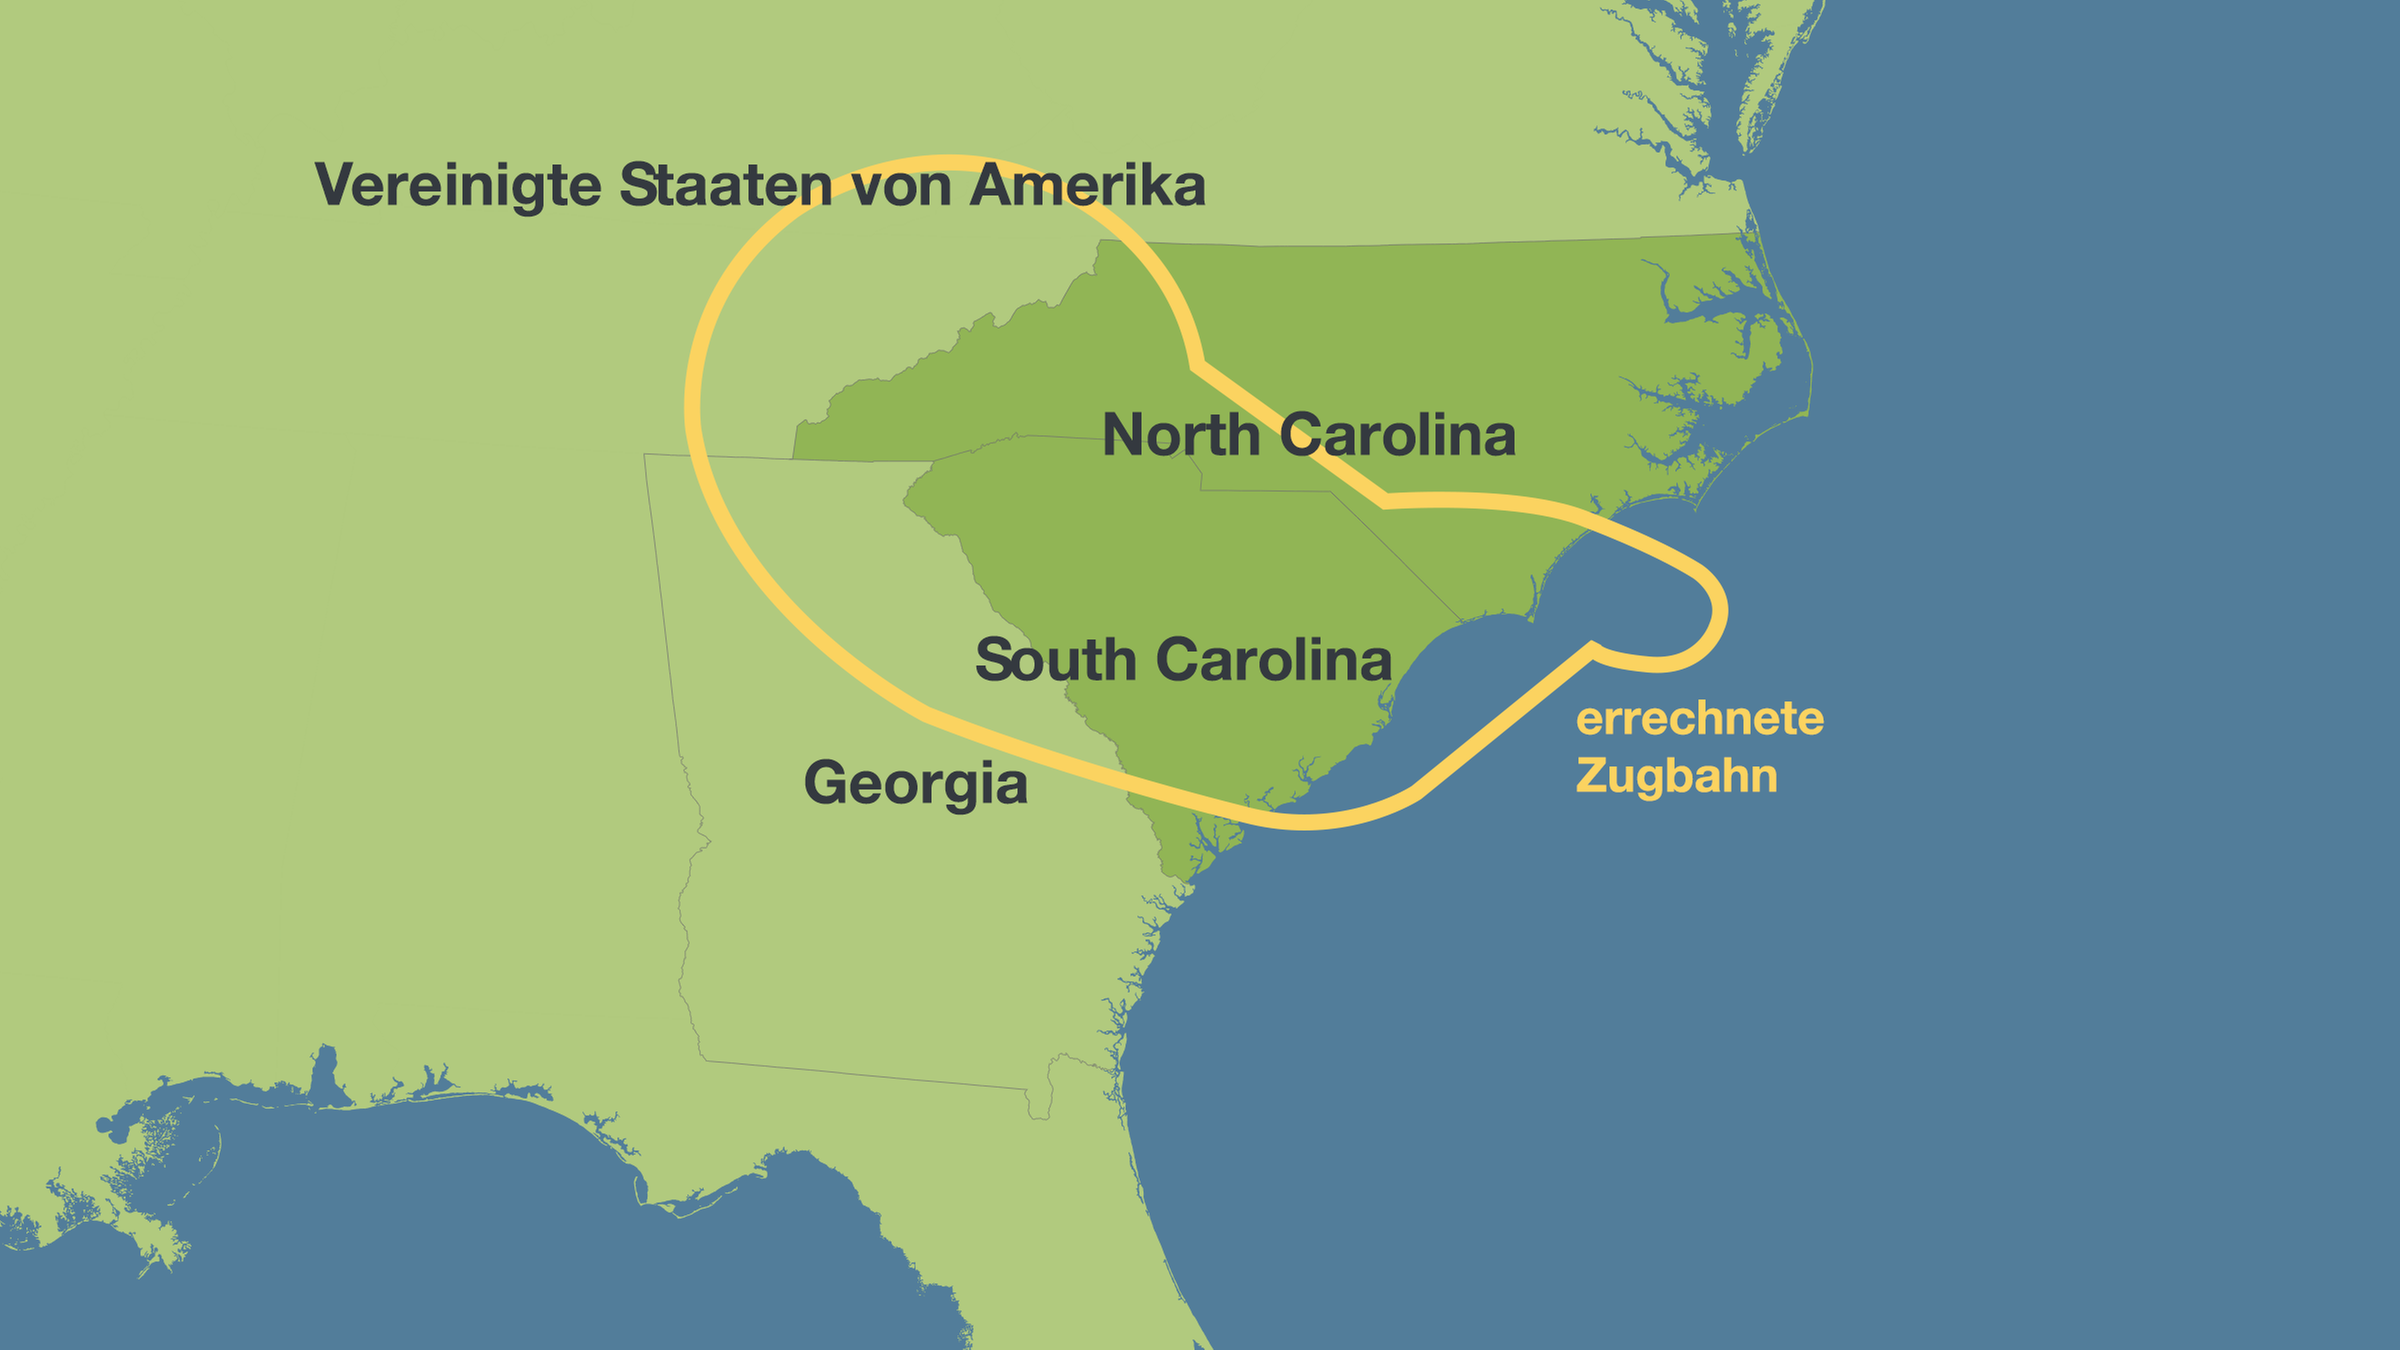 Karte der errechneten Zugbahn von Hurrikan "Florence" vor der Atlantikküste der USA